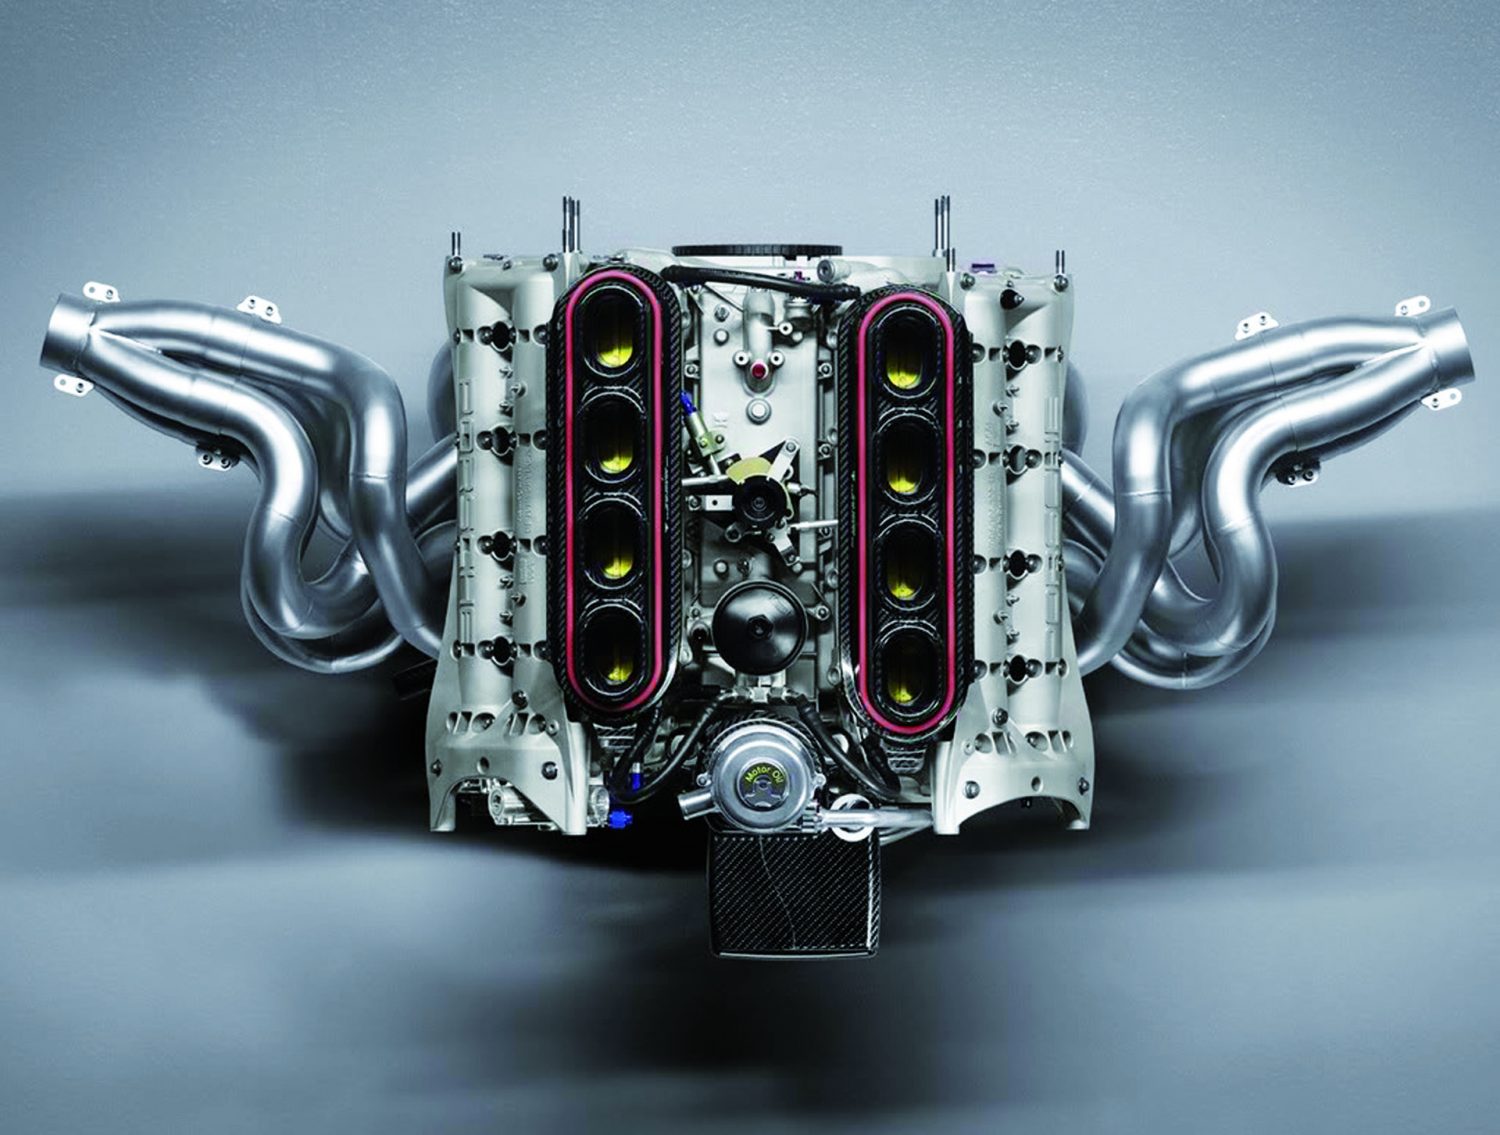 Il nuovo V8 con bancate disposte a 90°. Si noti anche l’alimentazione con una farfalla per cilindro, soluzione tipica dei motori da competizione.